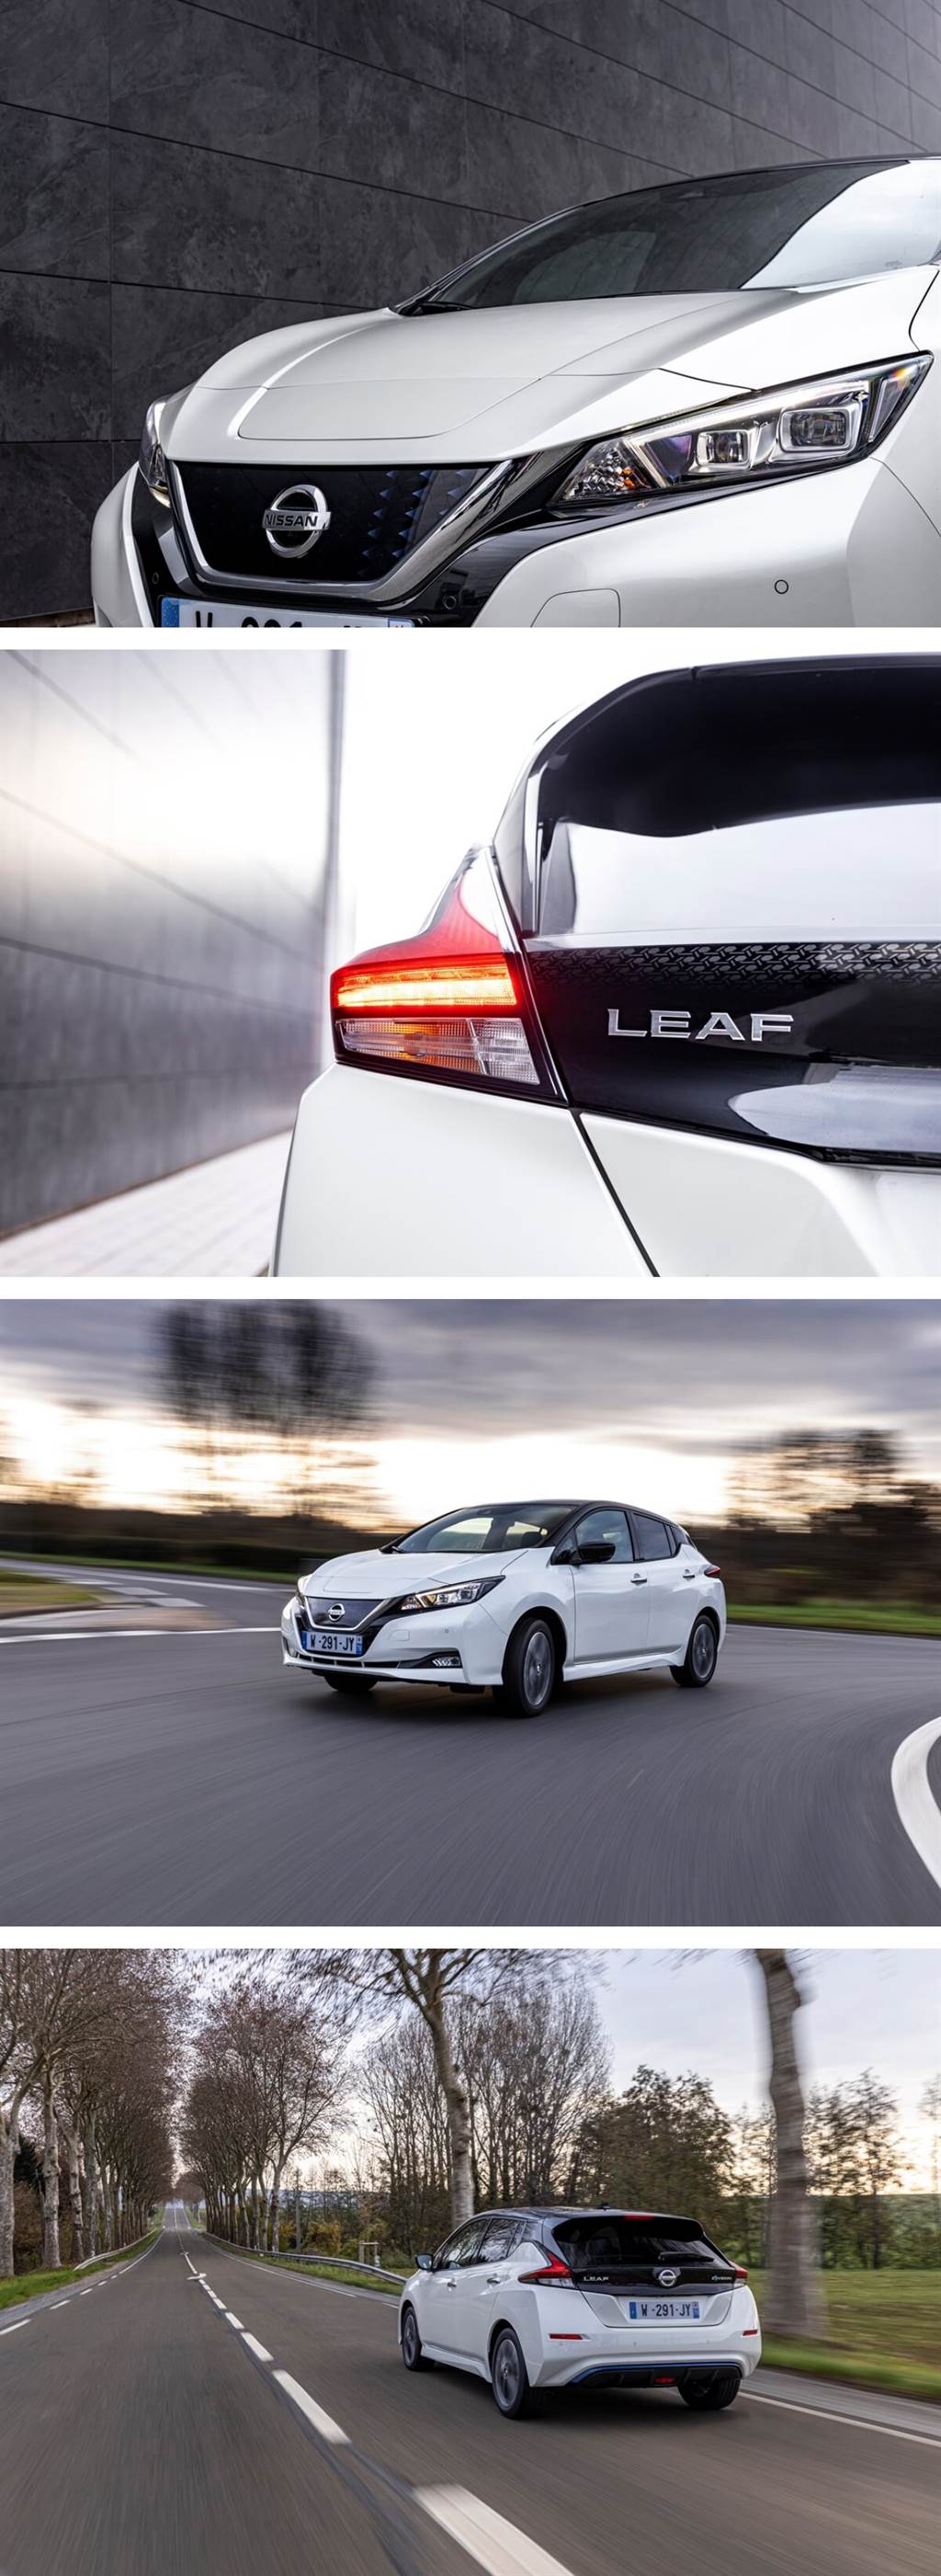 Nissan推出Leaf十週年紀念版 配備更便利的車聯網功能
